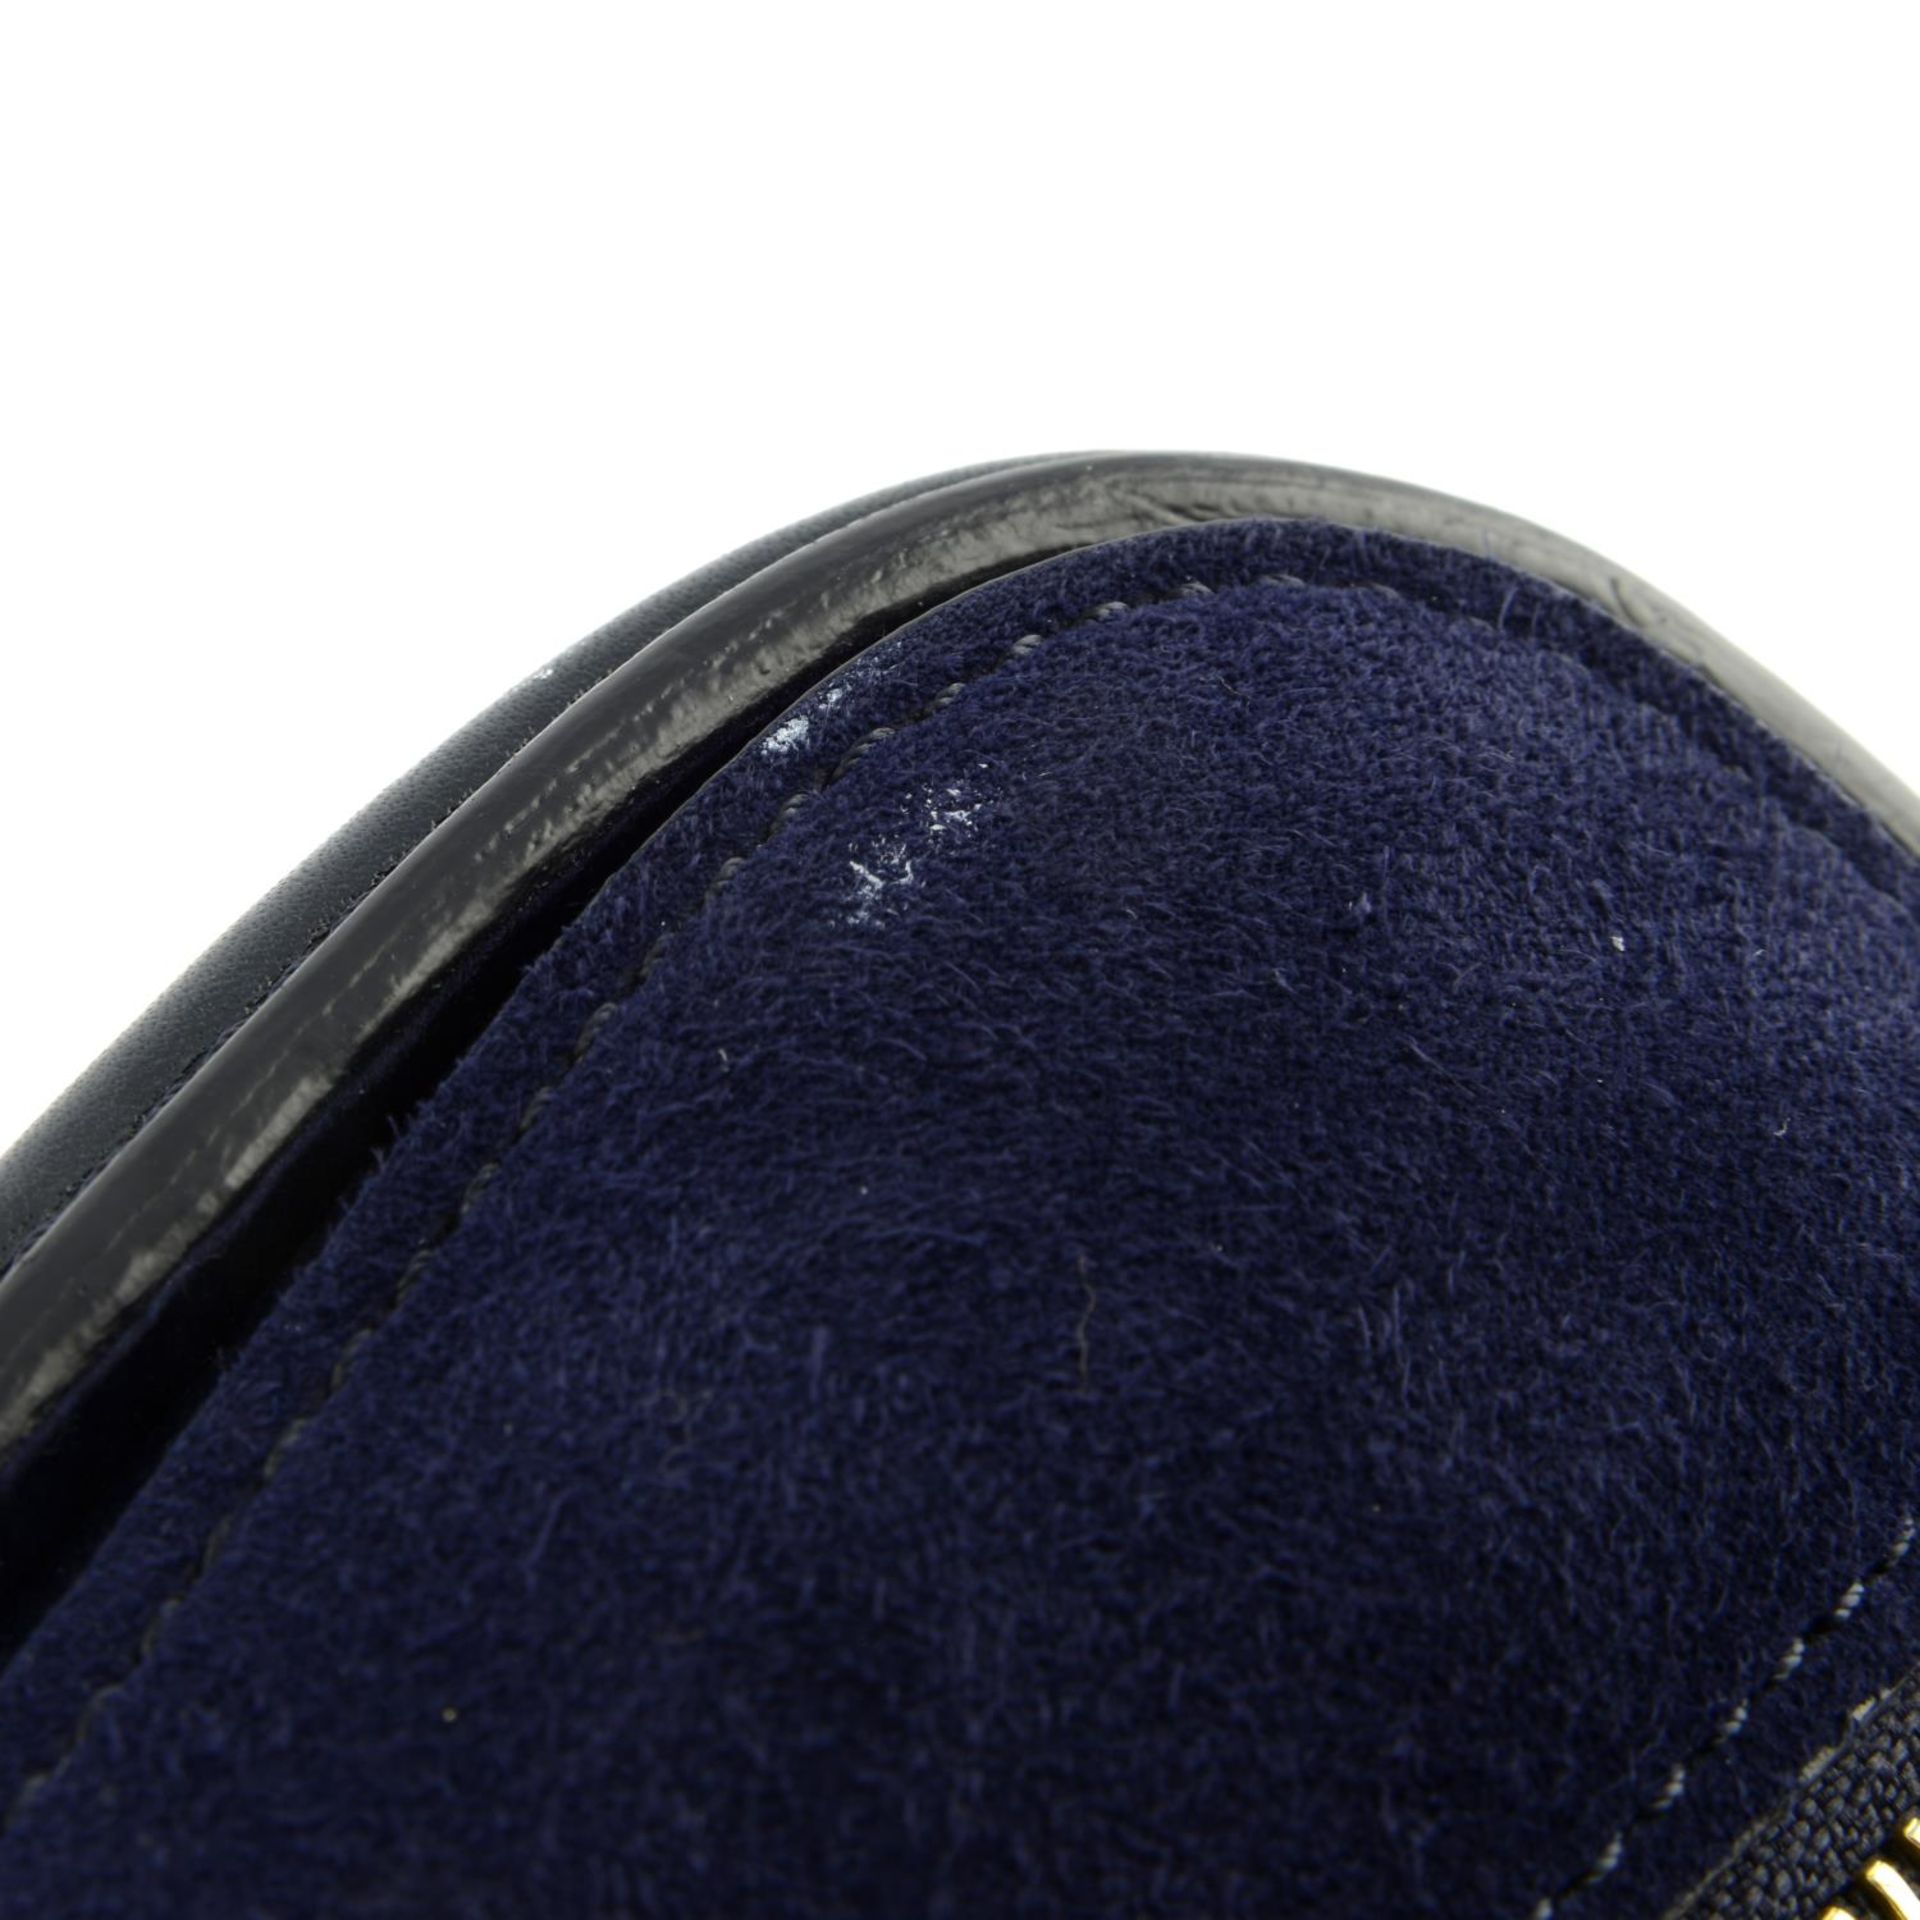 ALEXANDER MCQUEEN - a midnight blue python skin mini Heroine handbag. - Bild 7 aus 8